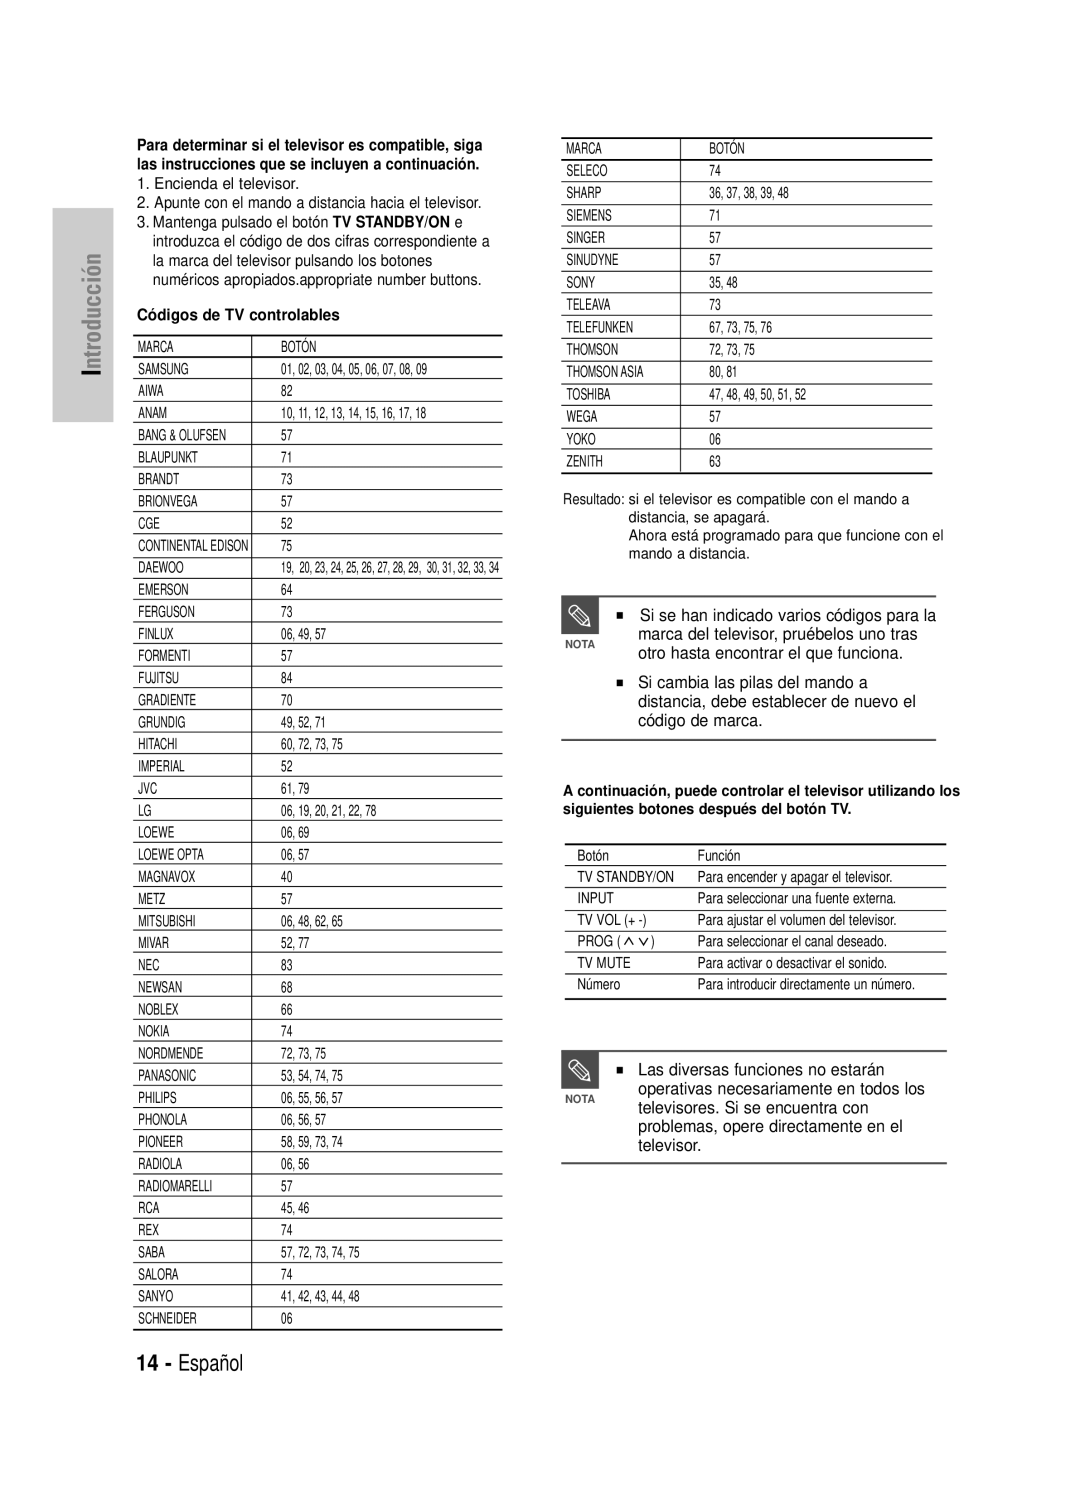 Samsung DVD-HR725/XET manual Español, Introducción, otro hasta encontrar el que funciona, Las diversas funciones no estarán 